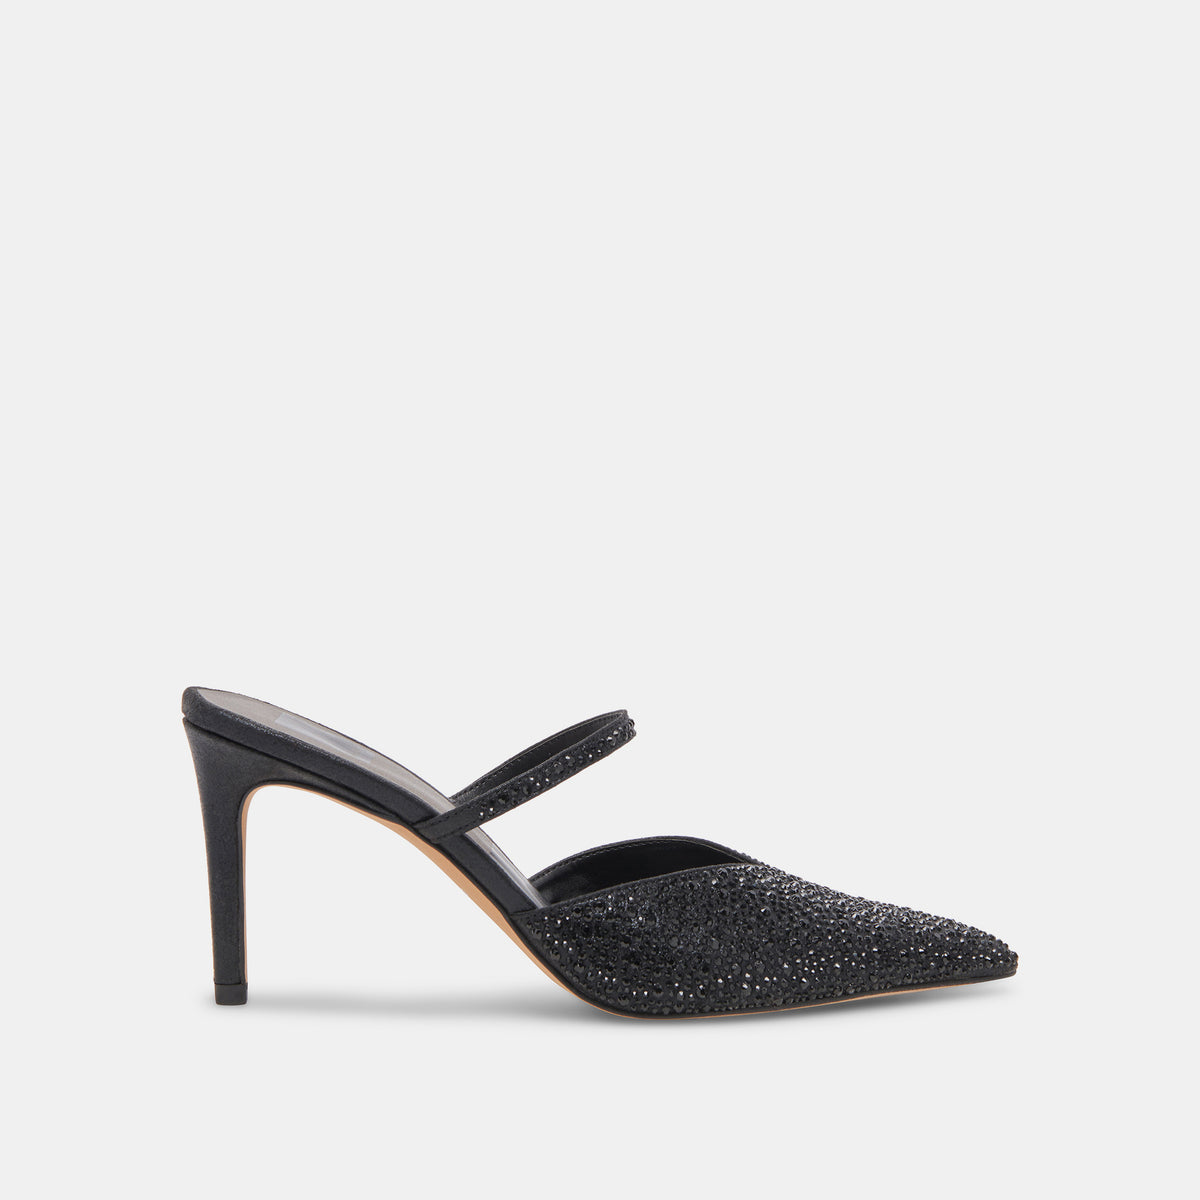 Dolce Vita Kanika Women's Shoes Black Metallic Fabric : 7.5 M